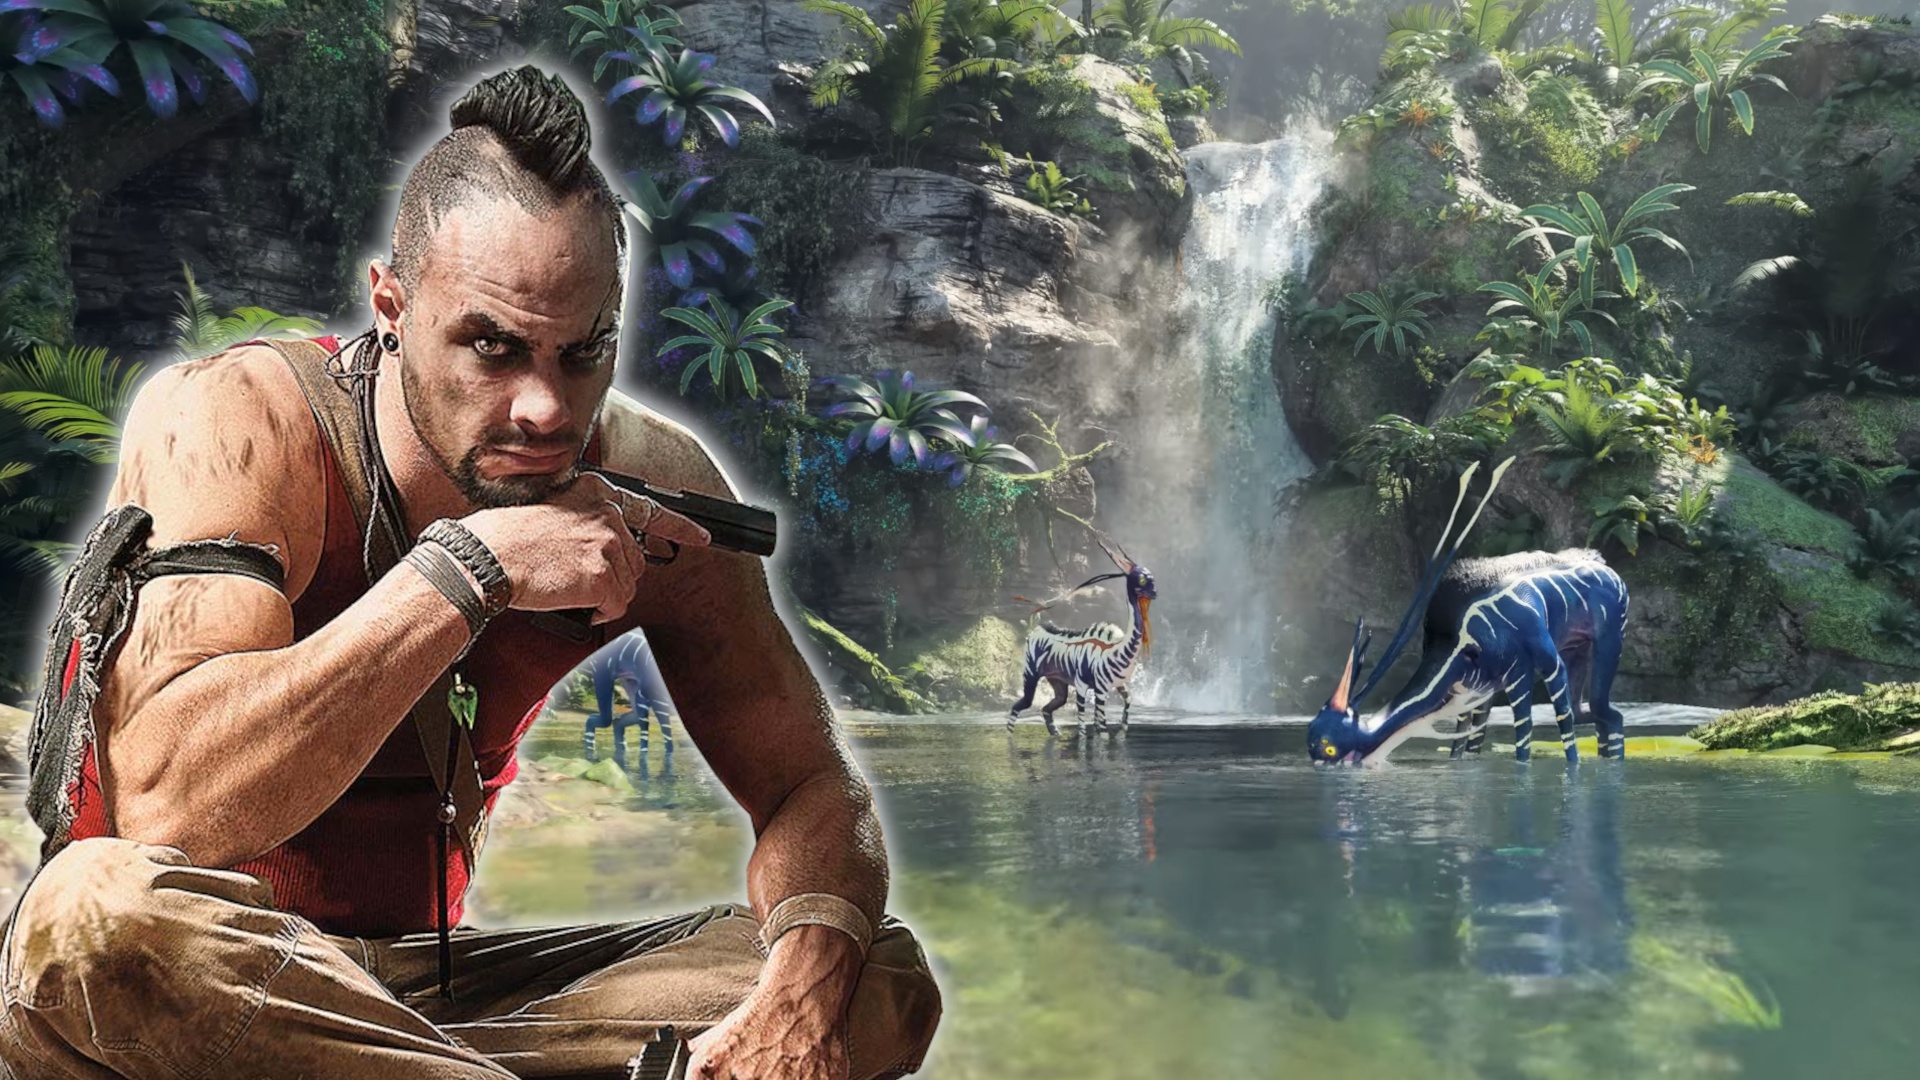 #Avatar: Ingame-Bild aus dem Open-World-Shooter geleakt und alle rufen „Far Cry!“